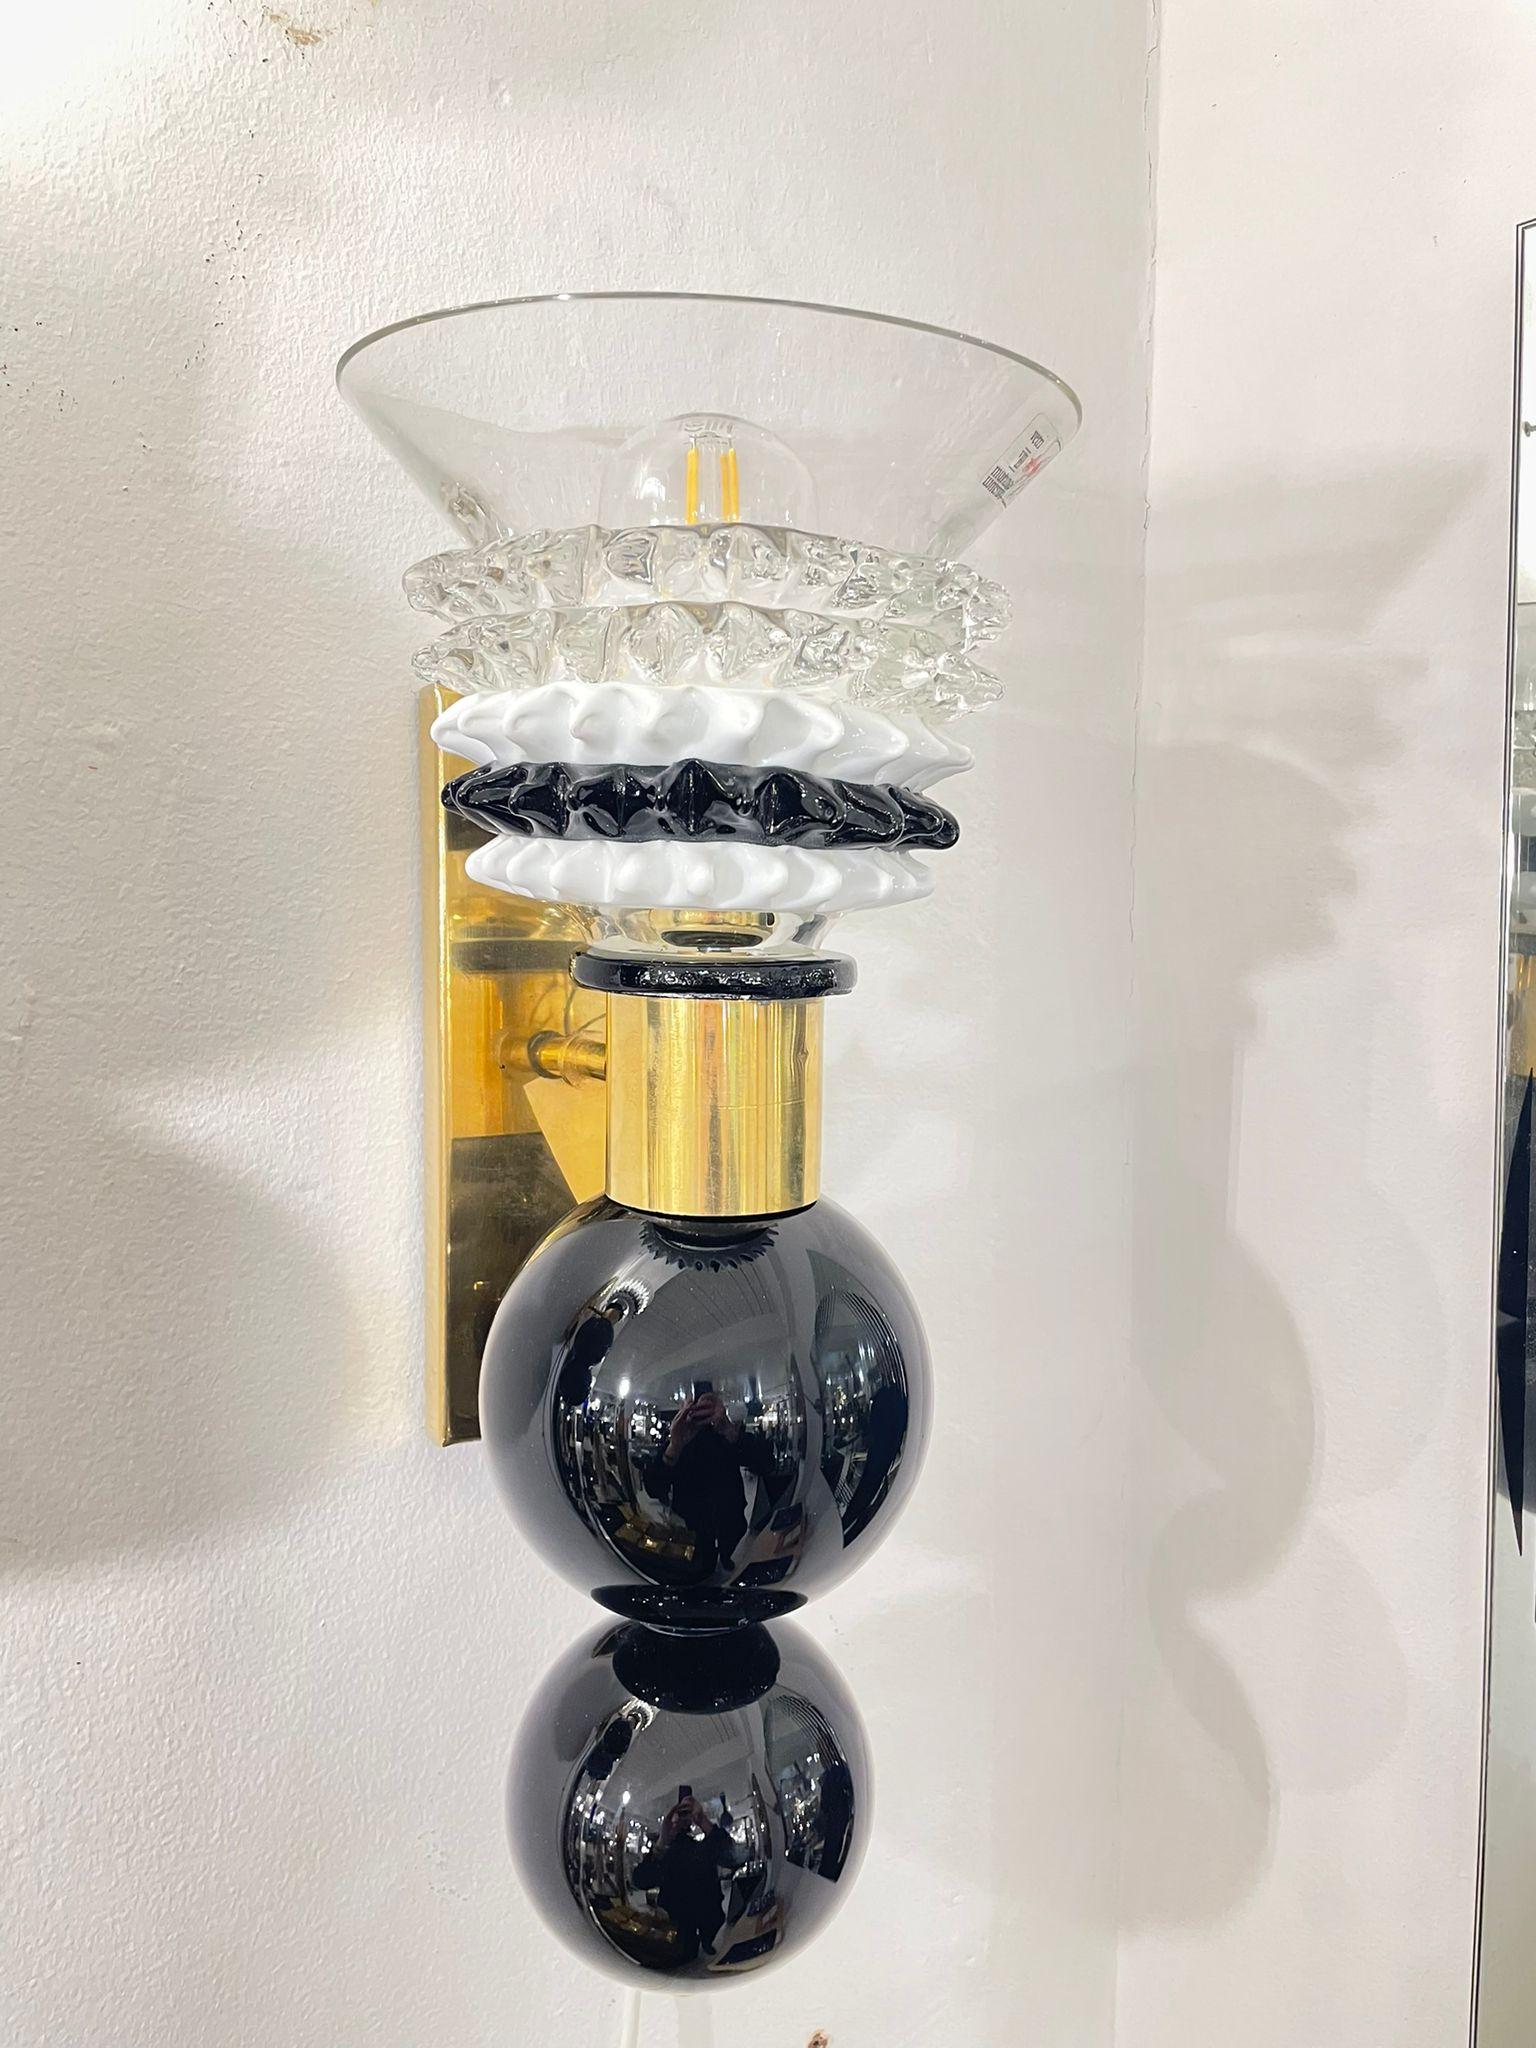 Une rare applique/interrupteur en verre de Murano soufflé à la main par le célèbre fabricant de verre Barovier&Toso, Italie, années 1960. Les éléments noirs et les abat-jour en verre blanc et noir donnent à l'applique un design très élégant et